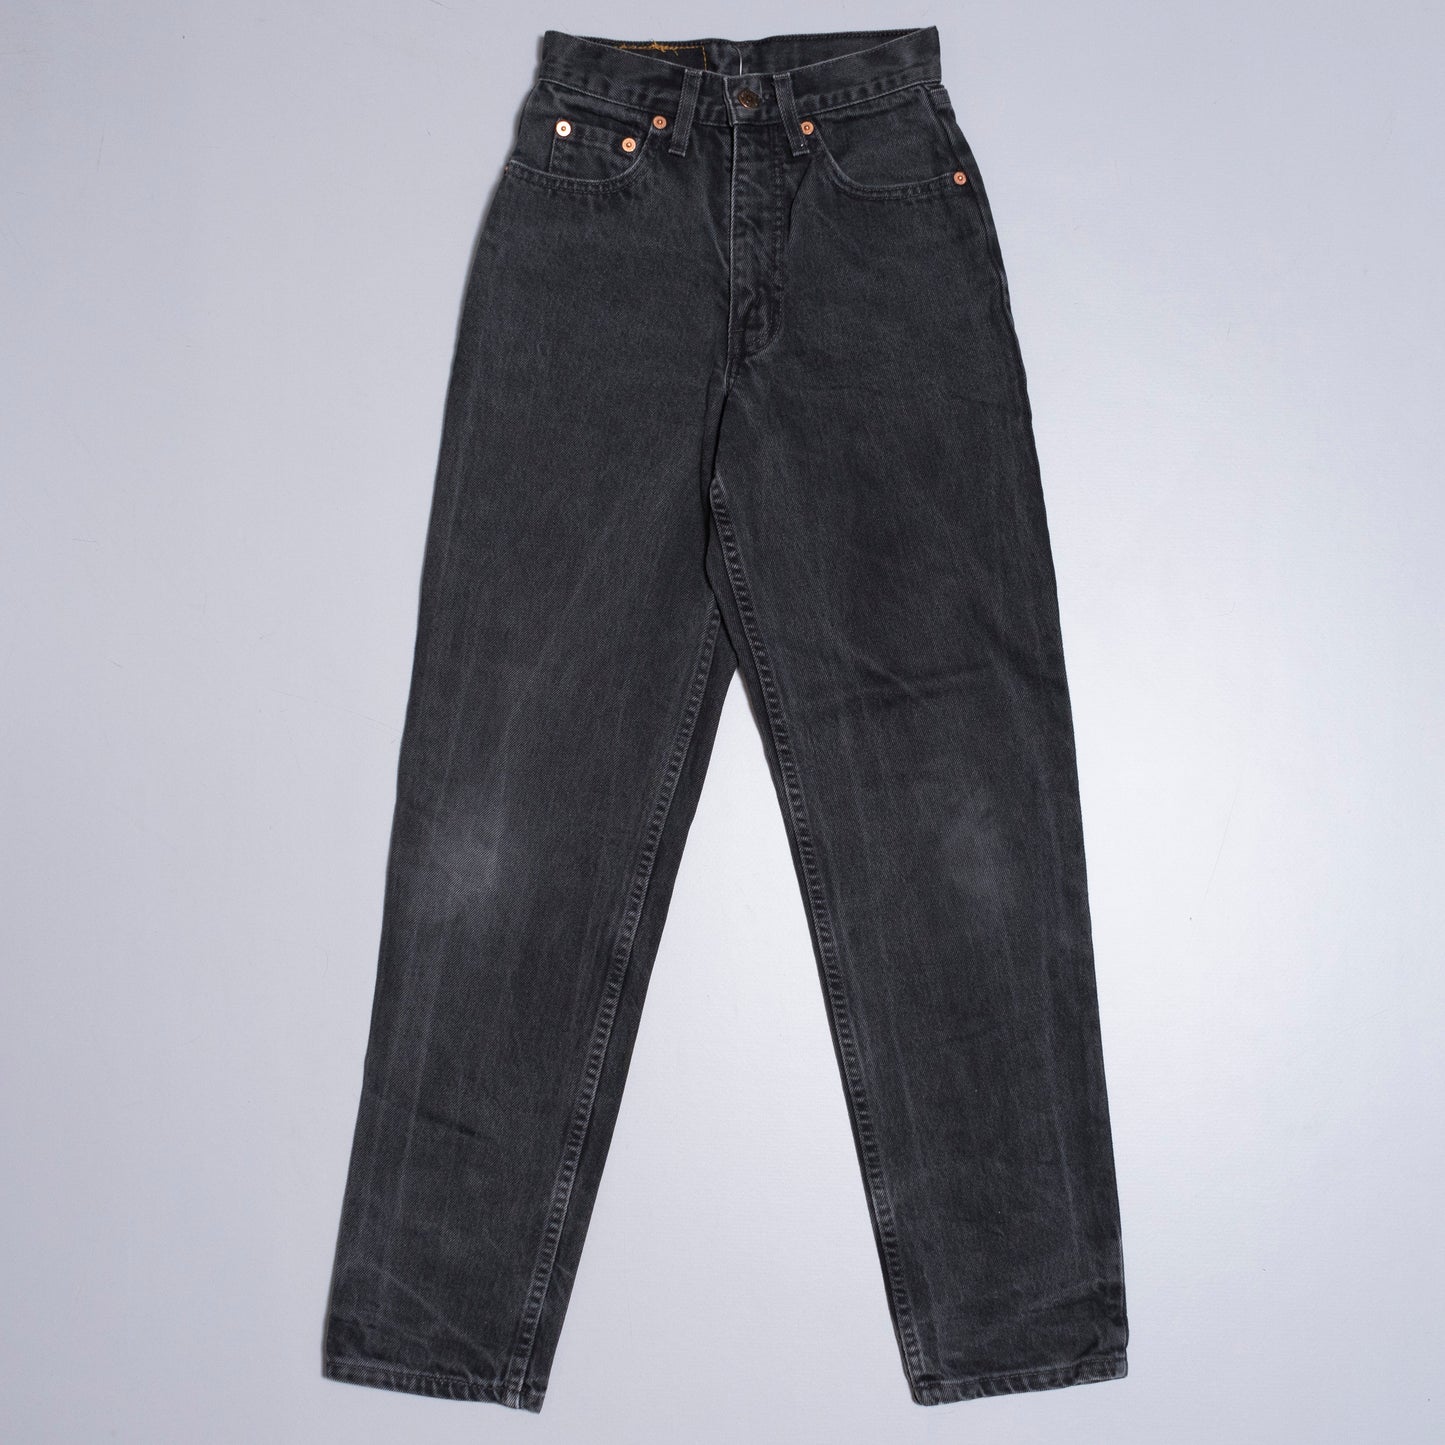 Levis 881 Jeans, 26/30